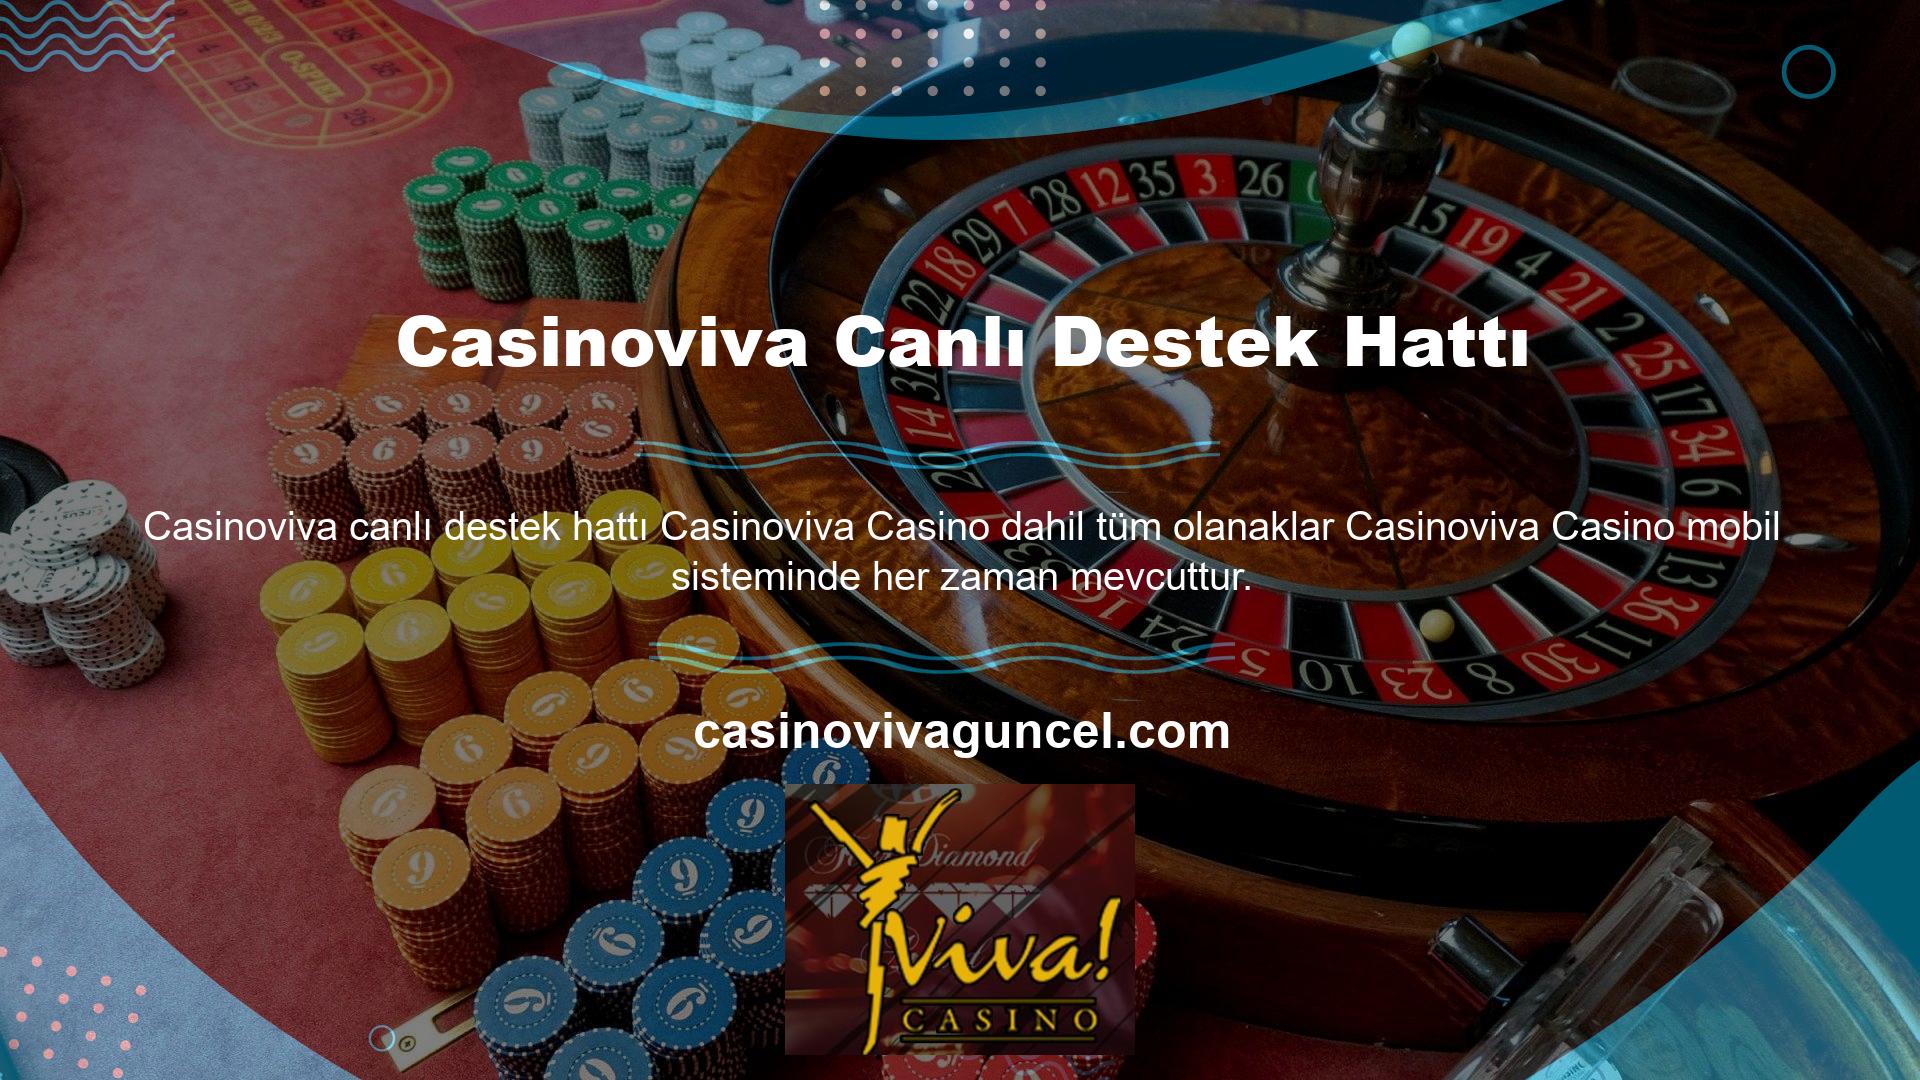 DMCA ve Avrupa lisans garantileriyle otantik bir casino lobi deneyimi sunuyoruz